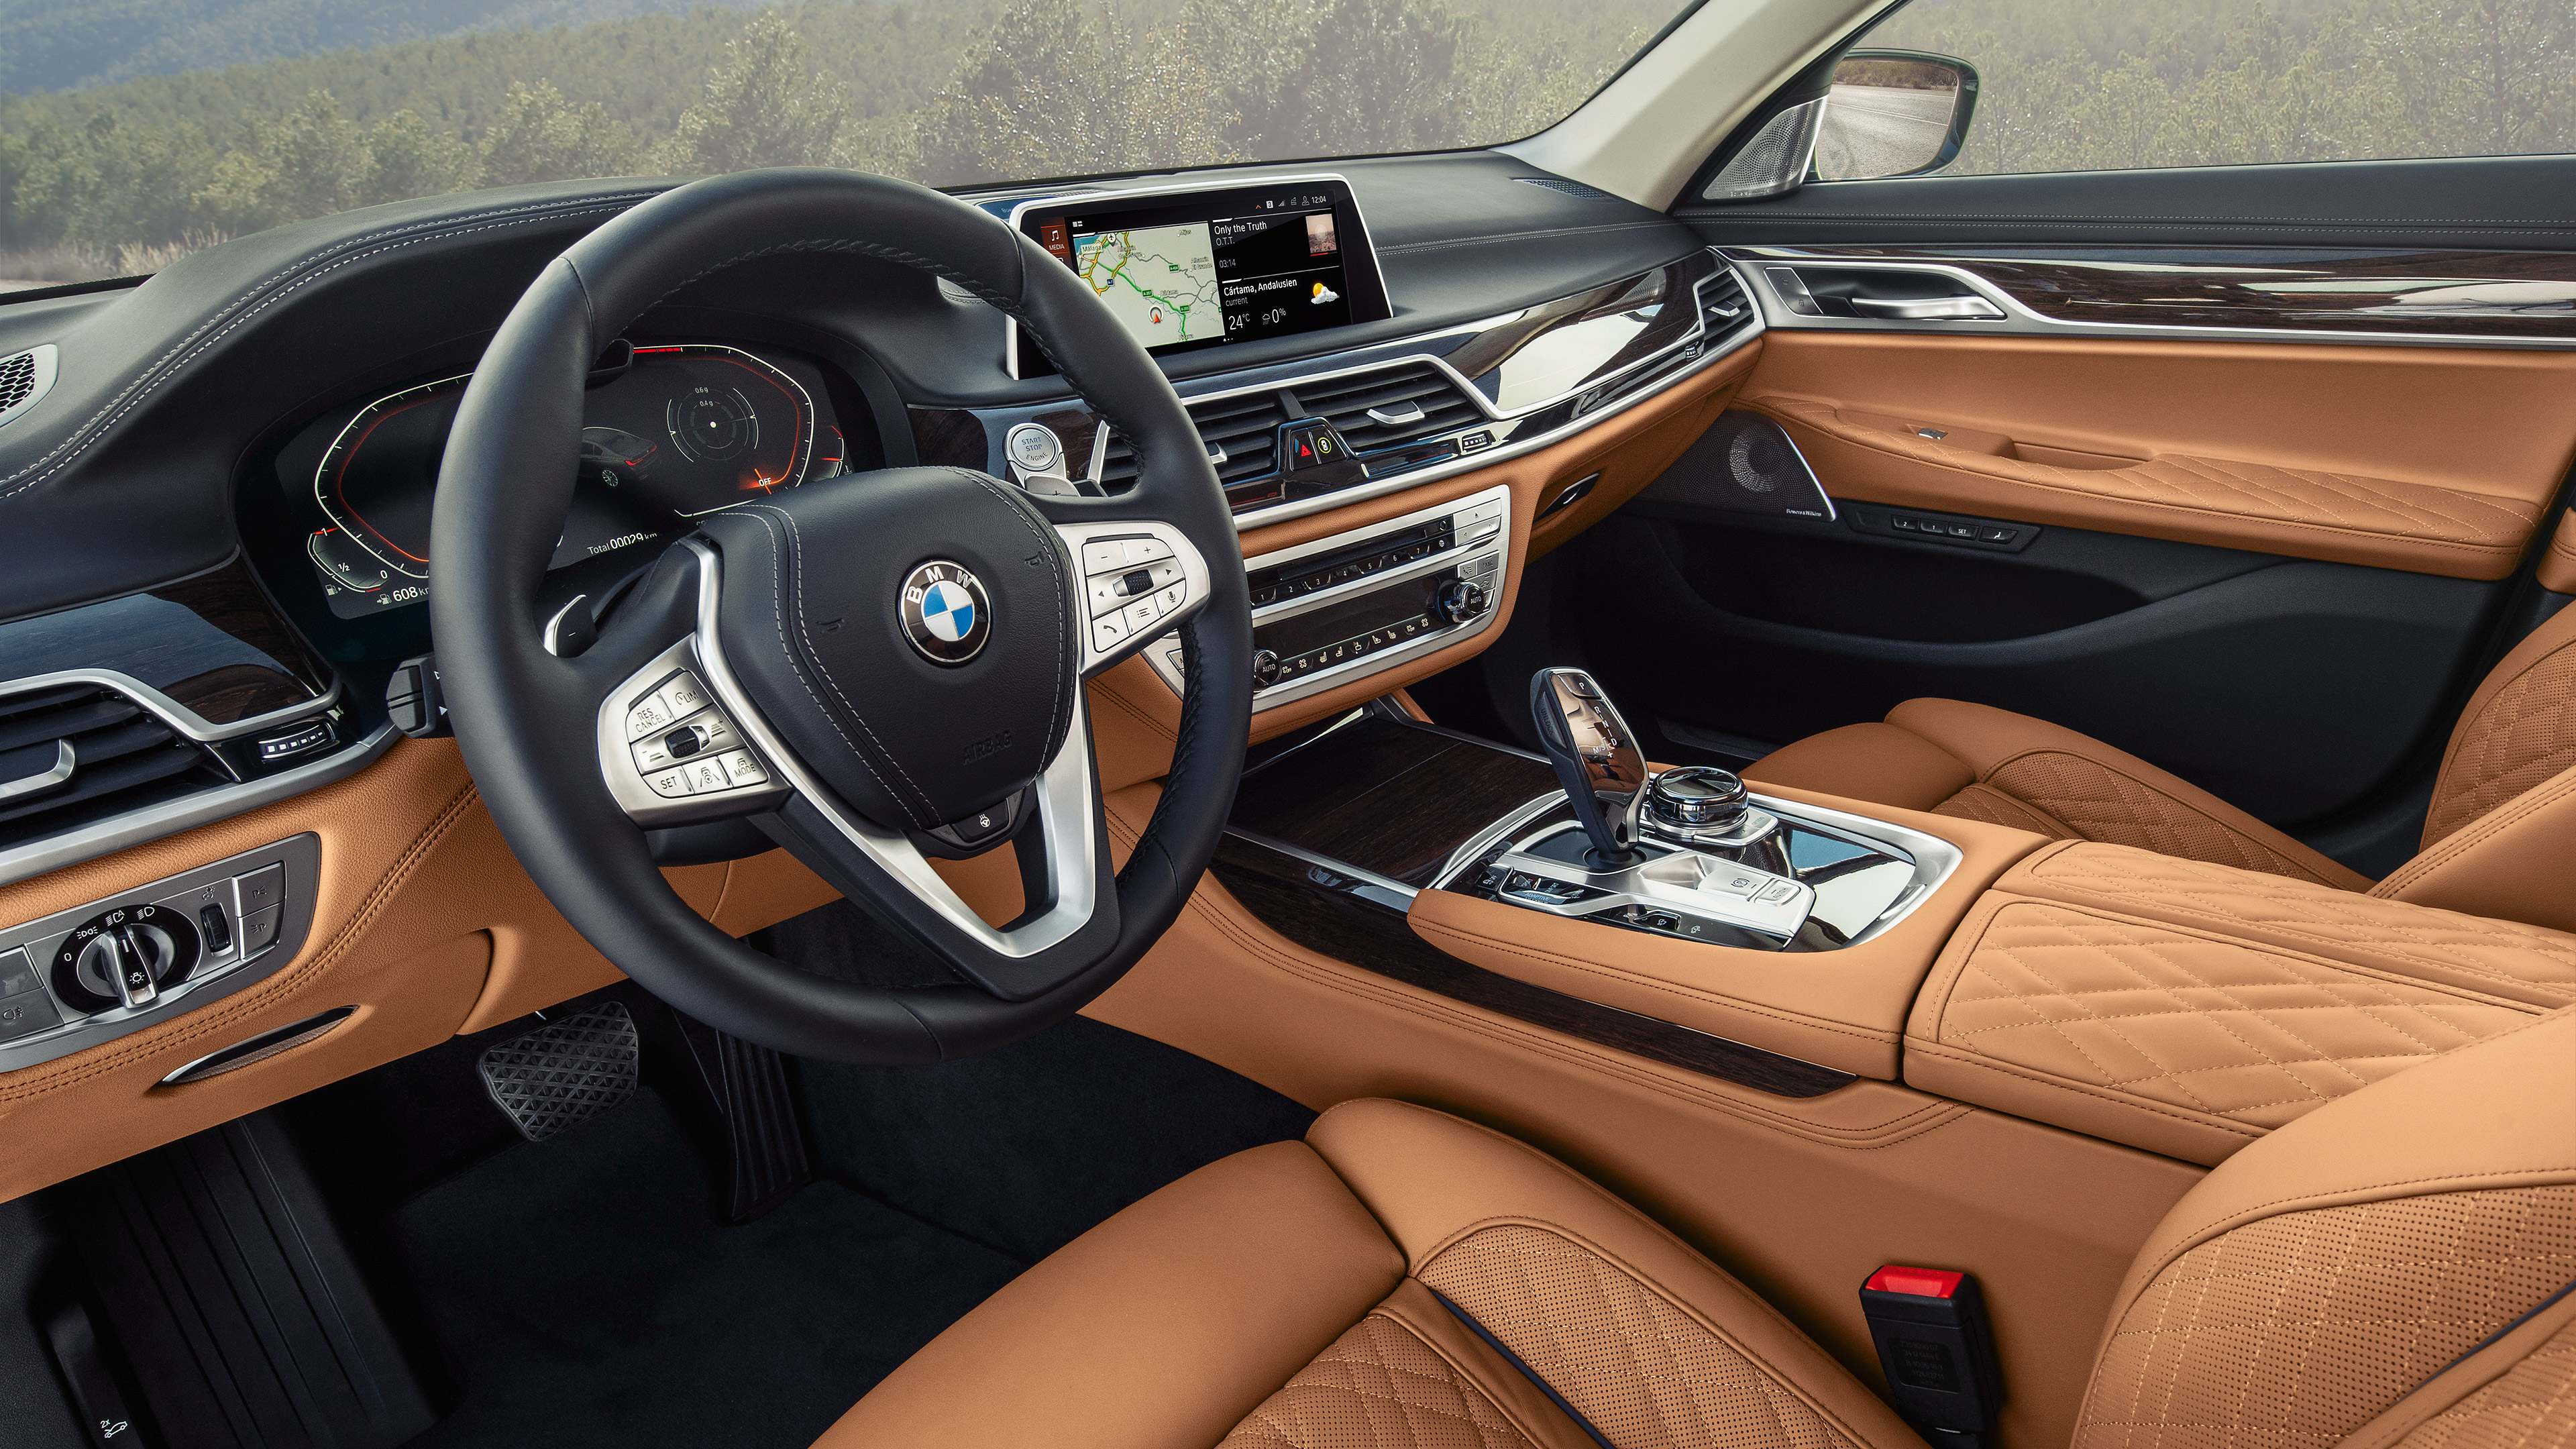  2020 BMW 7-Series Wallpaper.